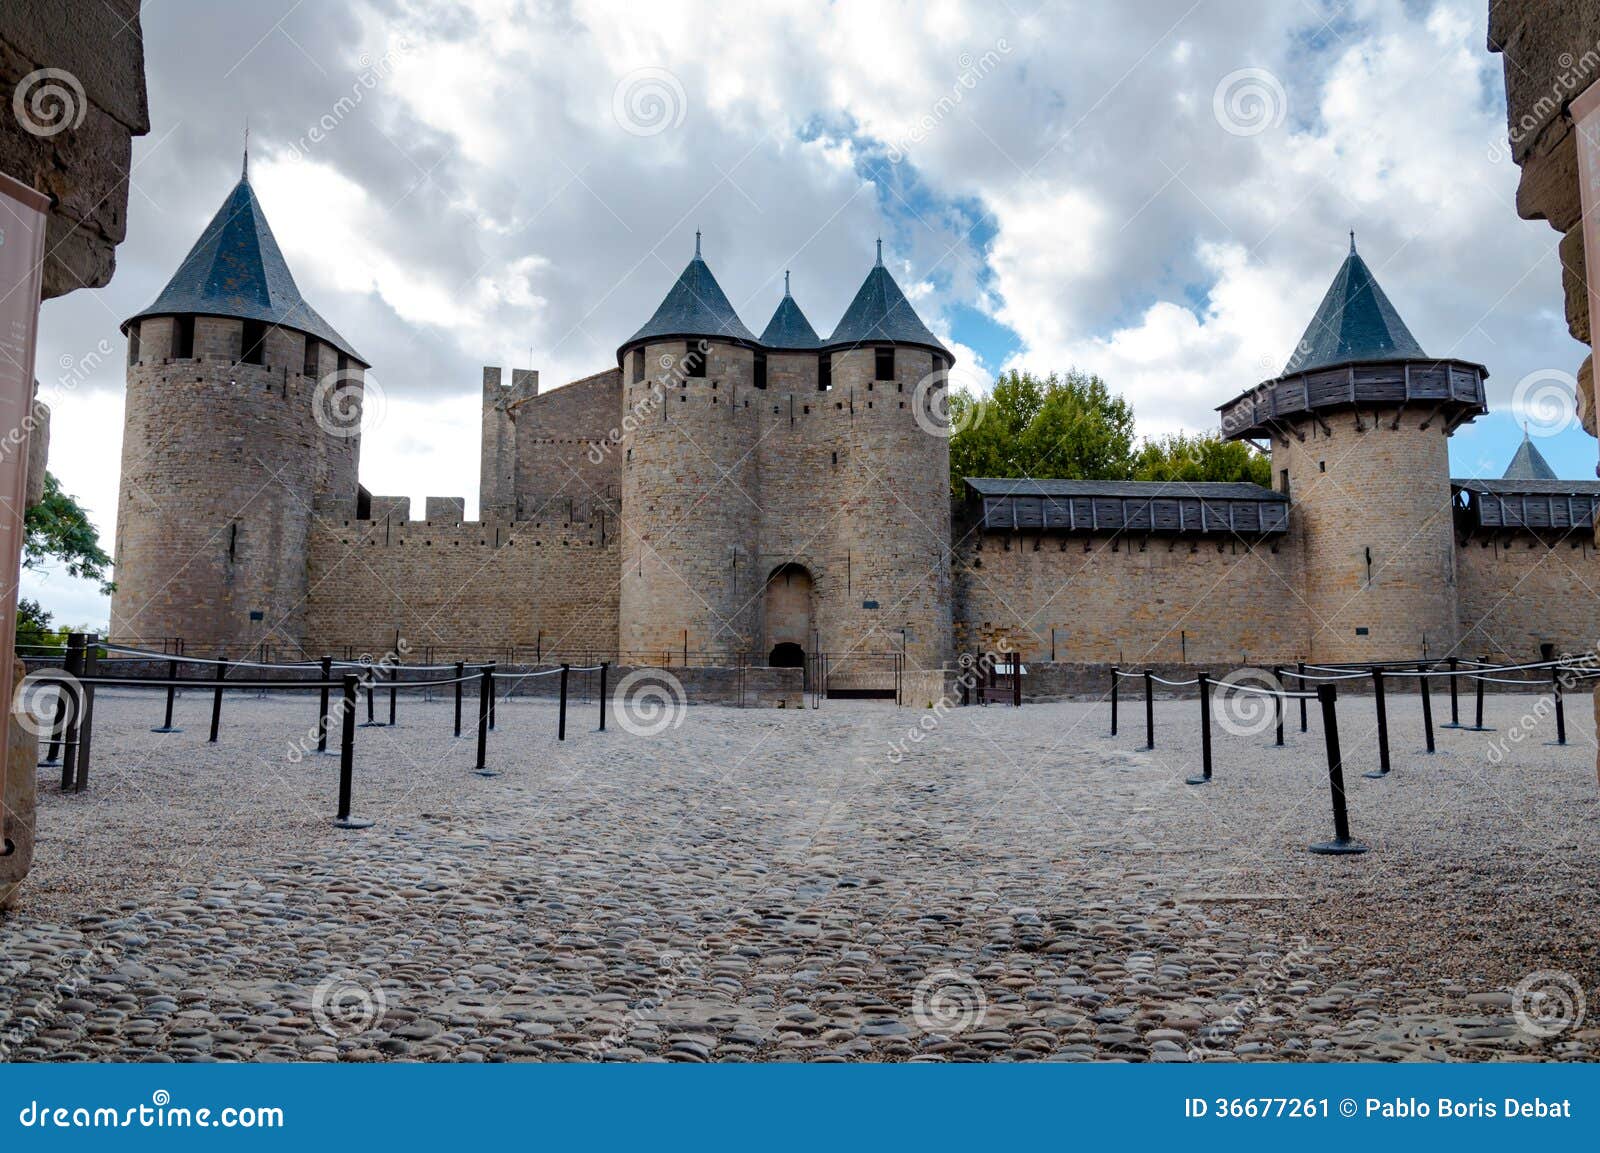 chateaux de la cite fachade entrance at carcassonne